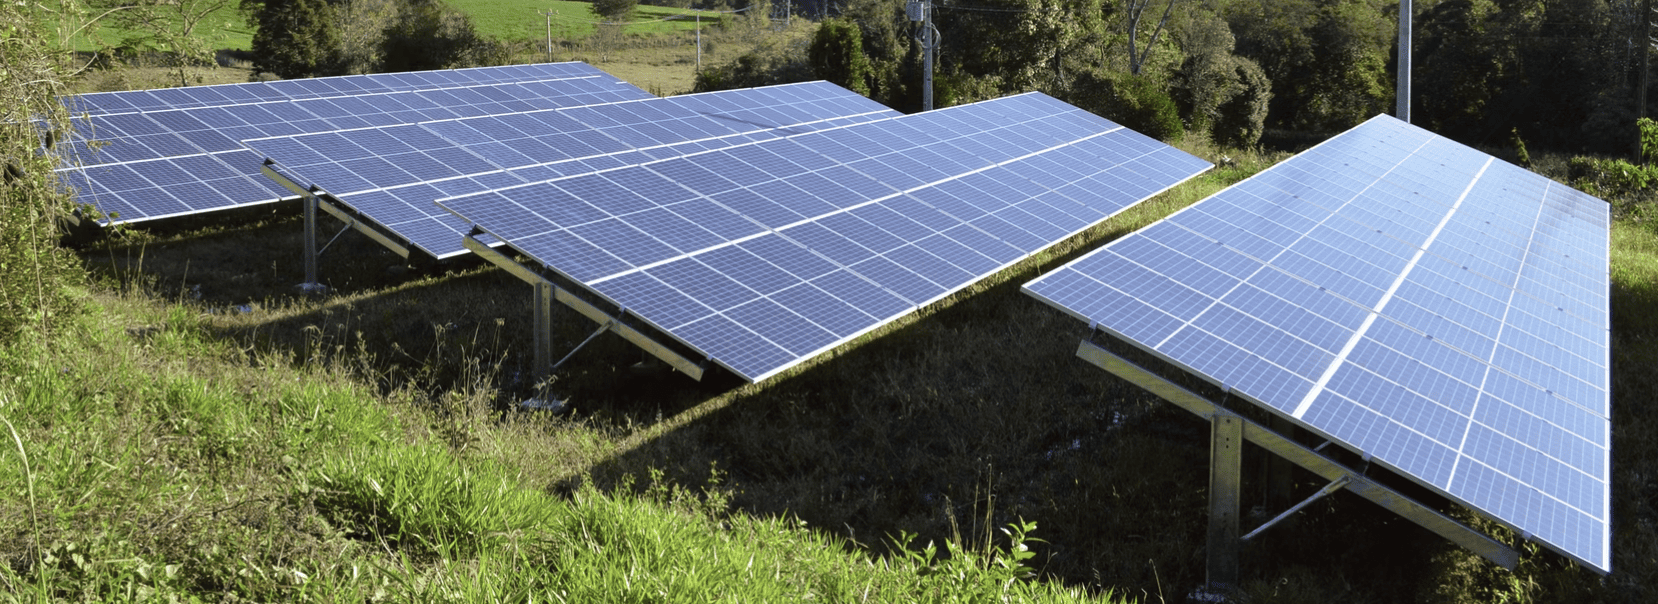 verzeichnis photovoltaik installateure in deutschland